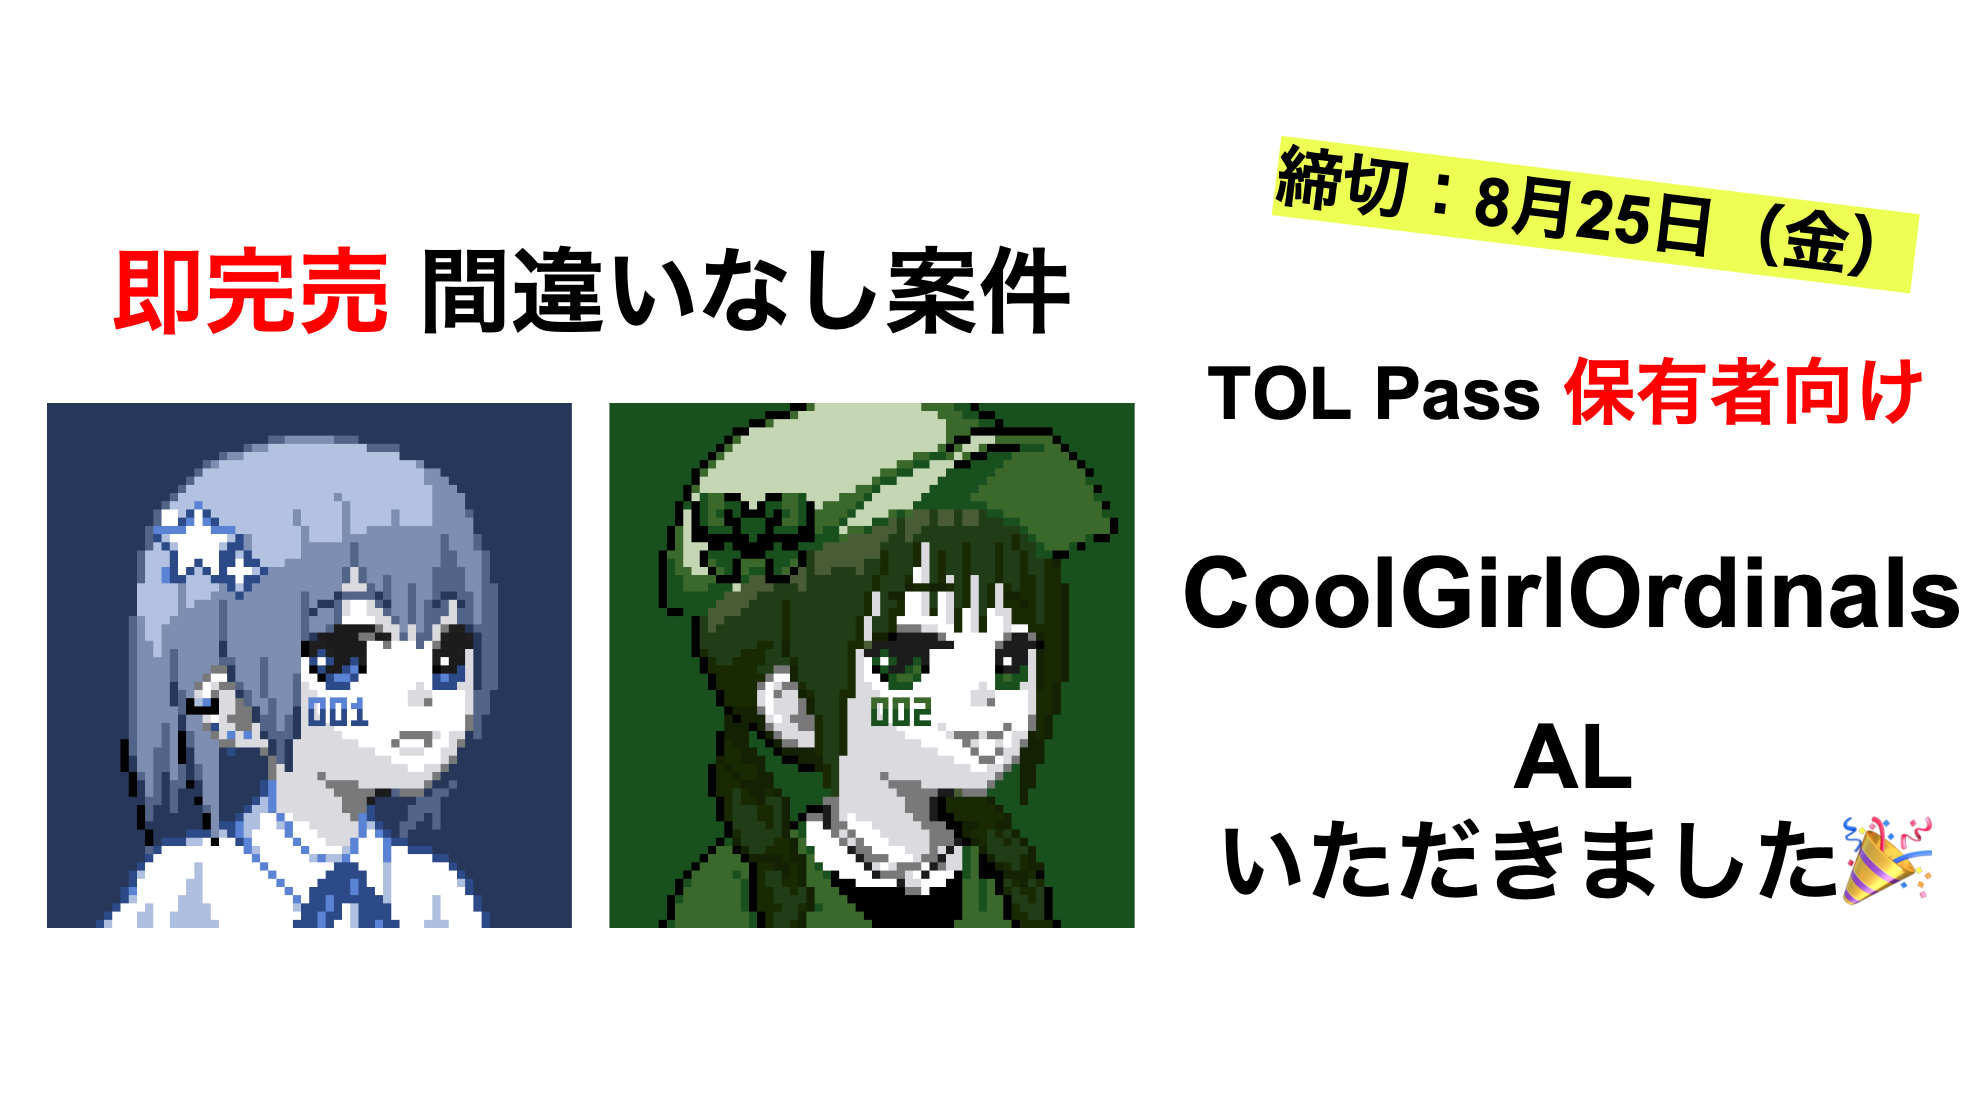 coolgirlordinals TOL Pass